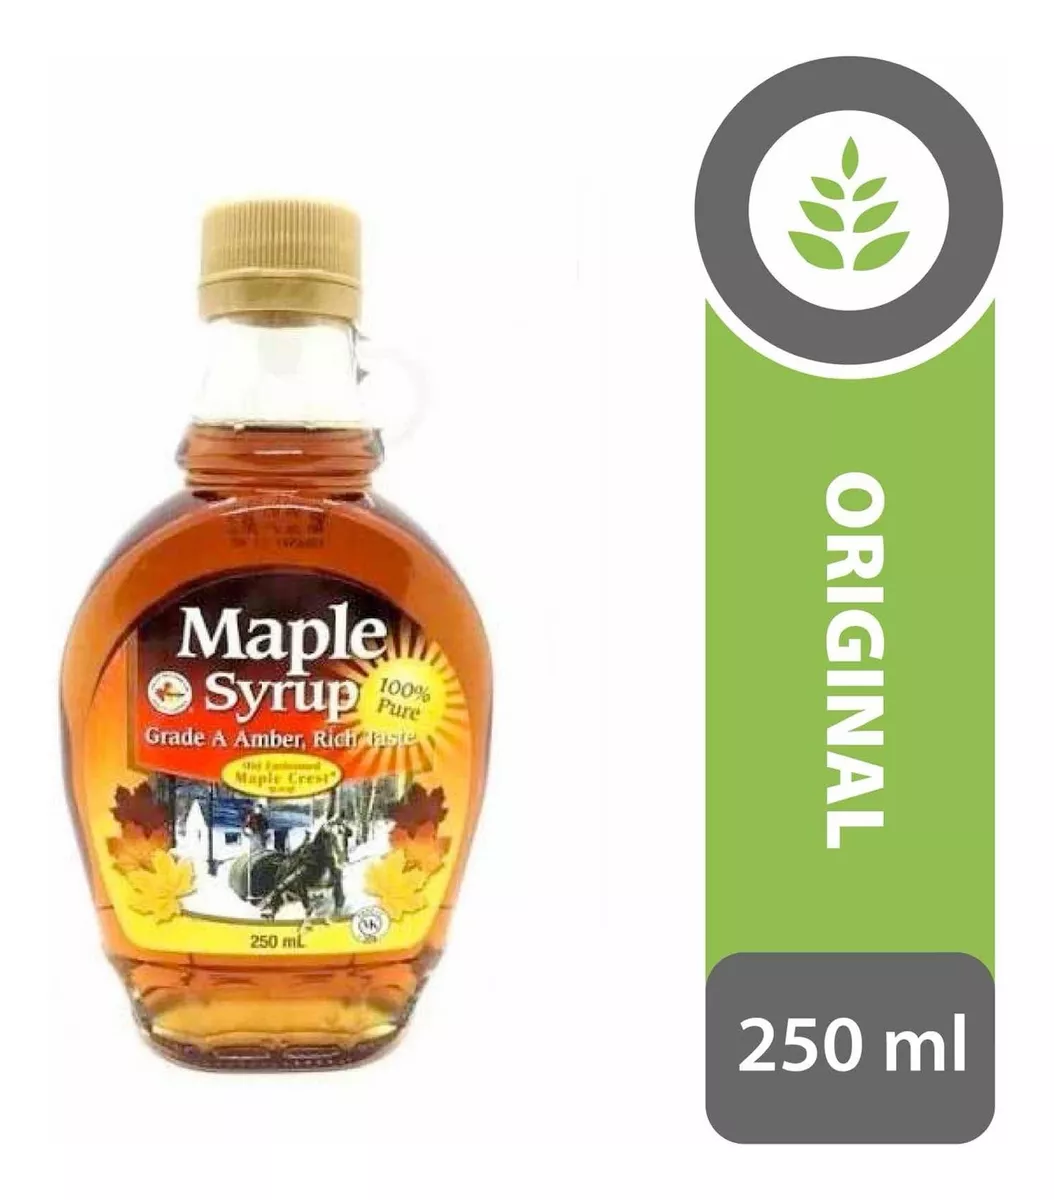 Segunda imagen para búsqueda de maple syrup